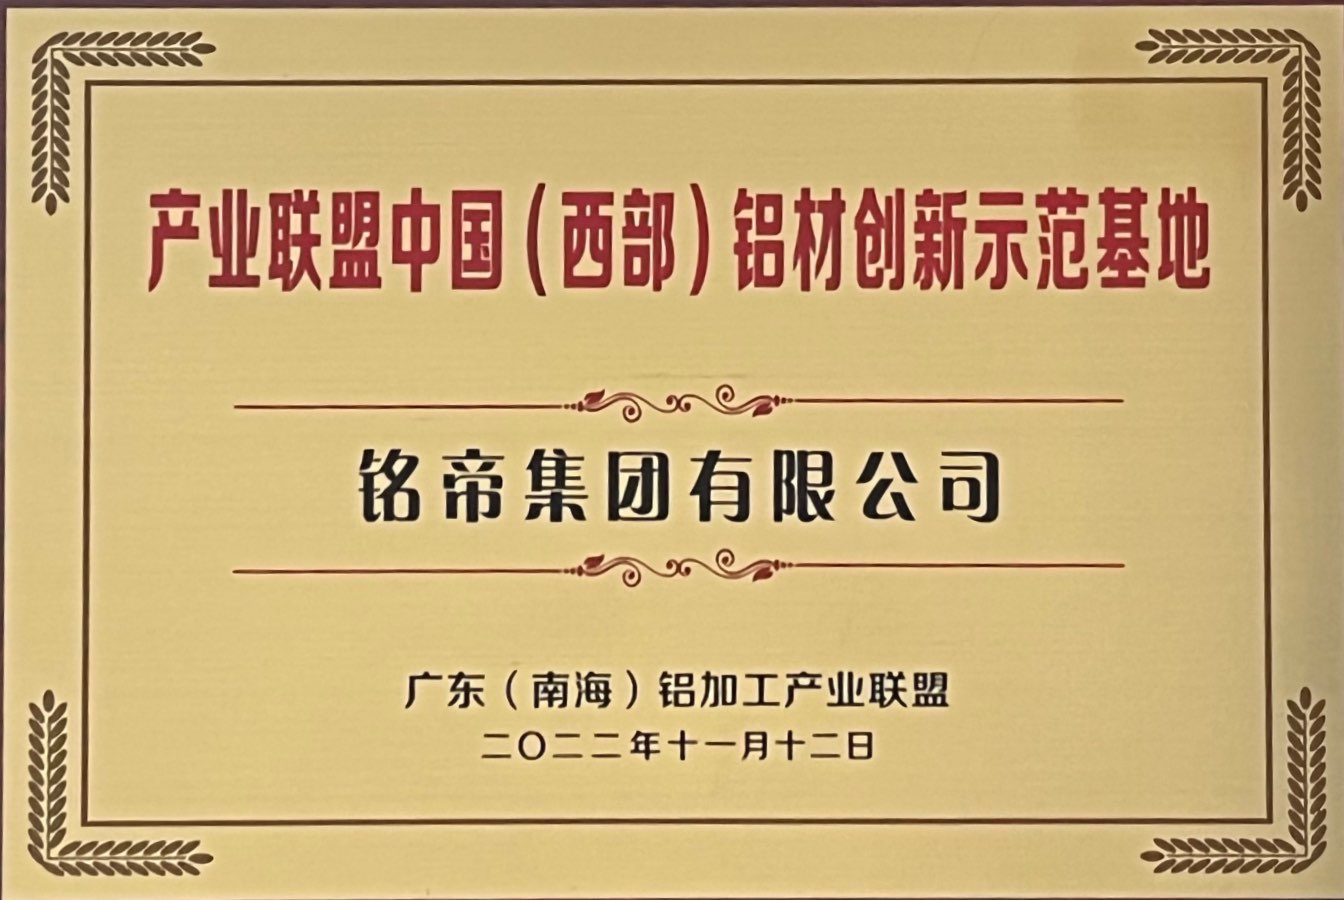 铭帝集团荣获广东南海铝加工产业联盟中国西部铝材创新示范基地